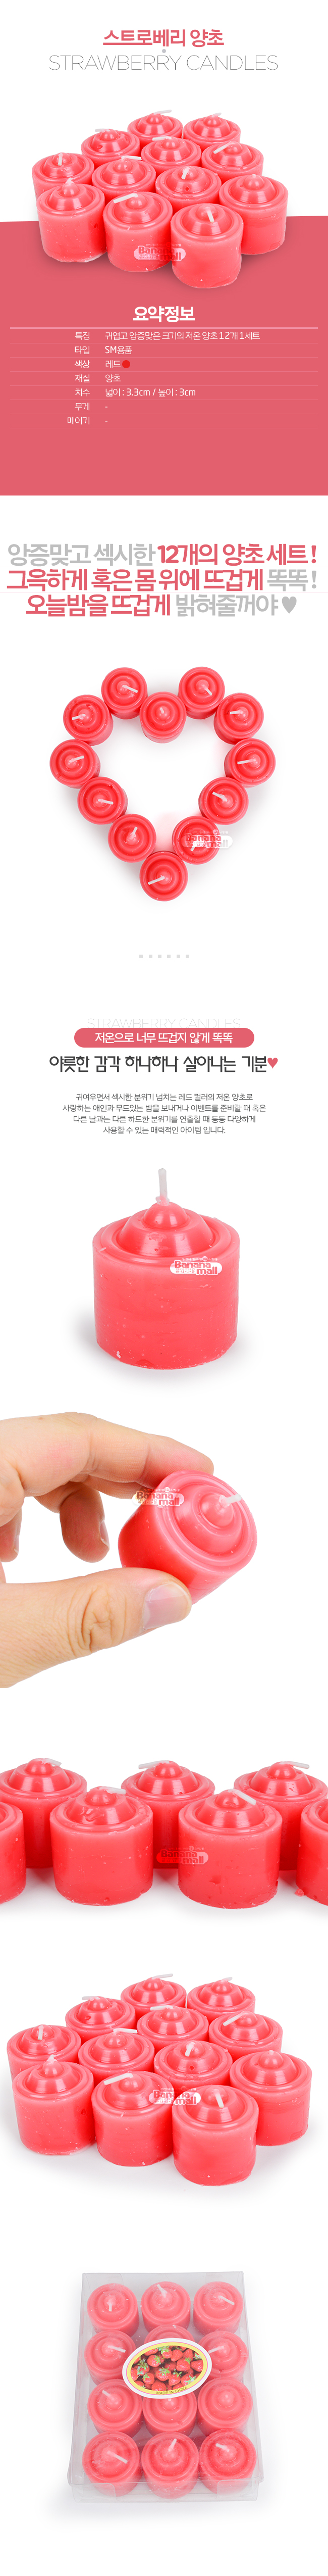 [저온 양초] 스트로베리 양초(Strawberry Candles) (JBG)